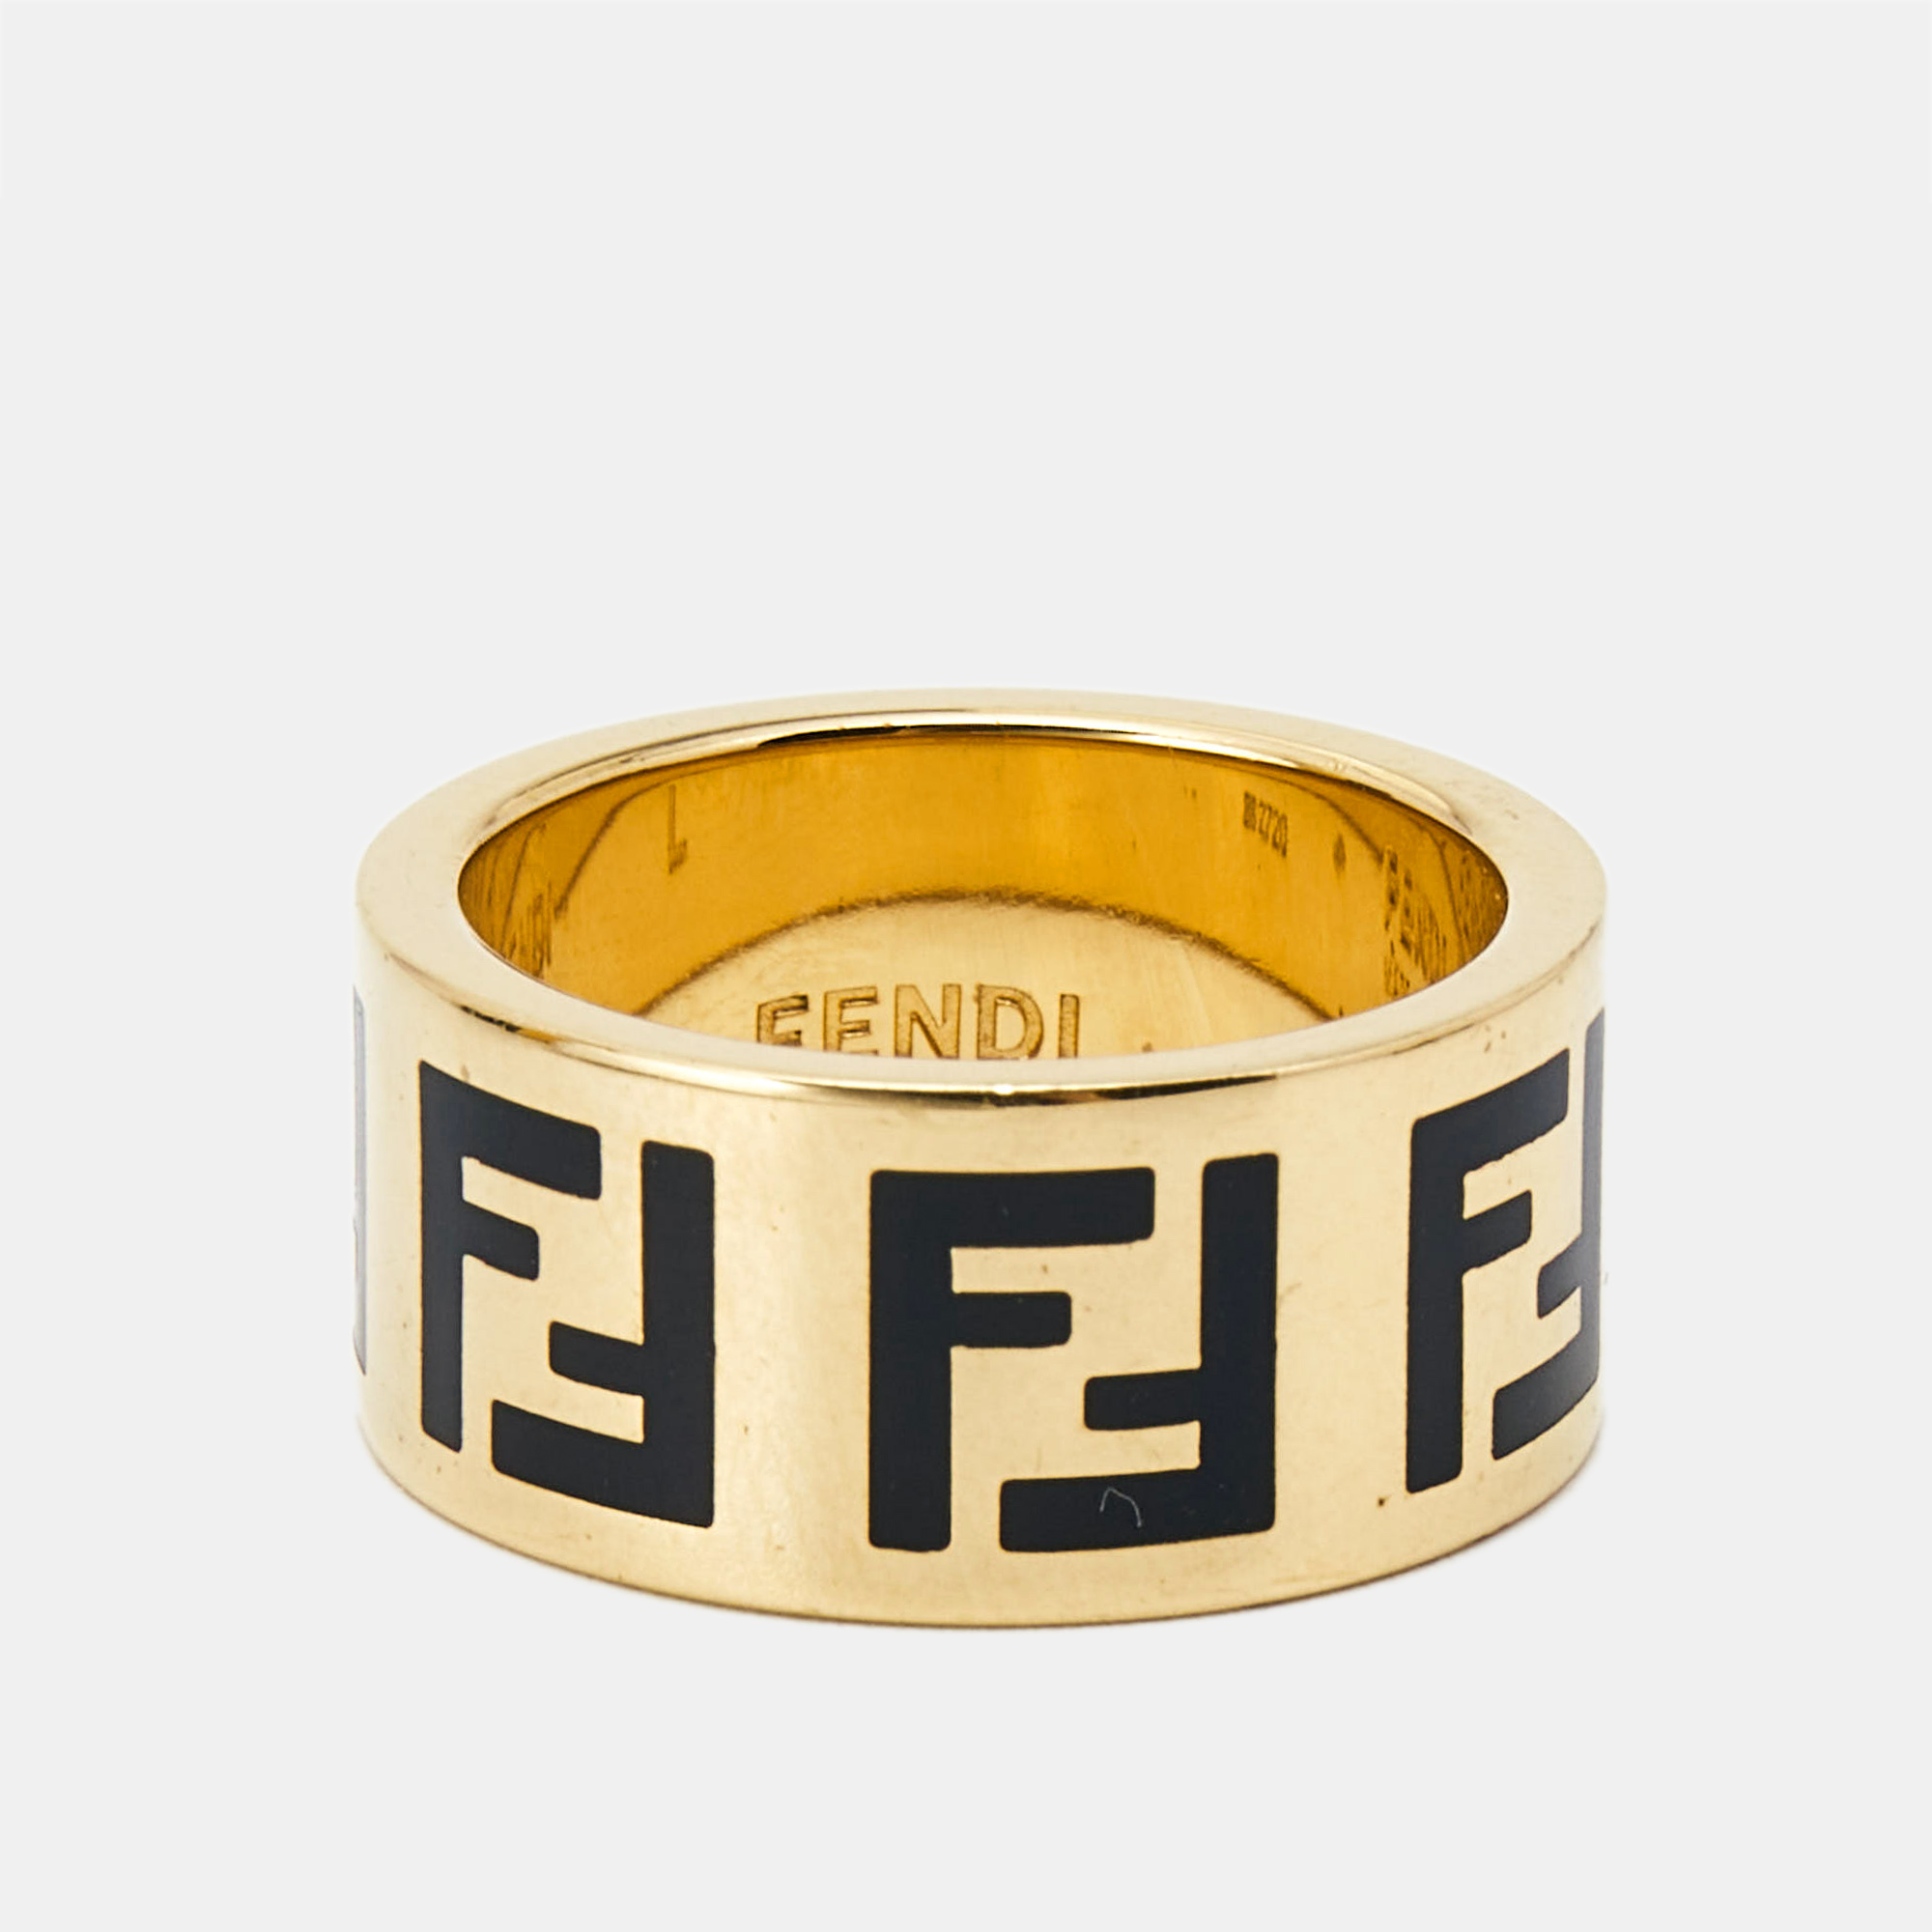 

Fendi Forever Fendi Enamel Gold Tone Band Ring Size